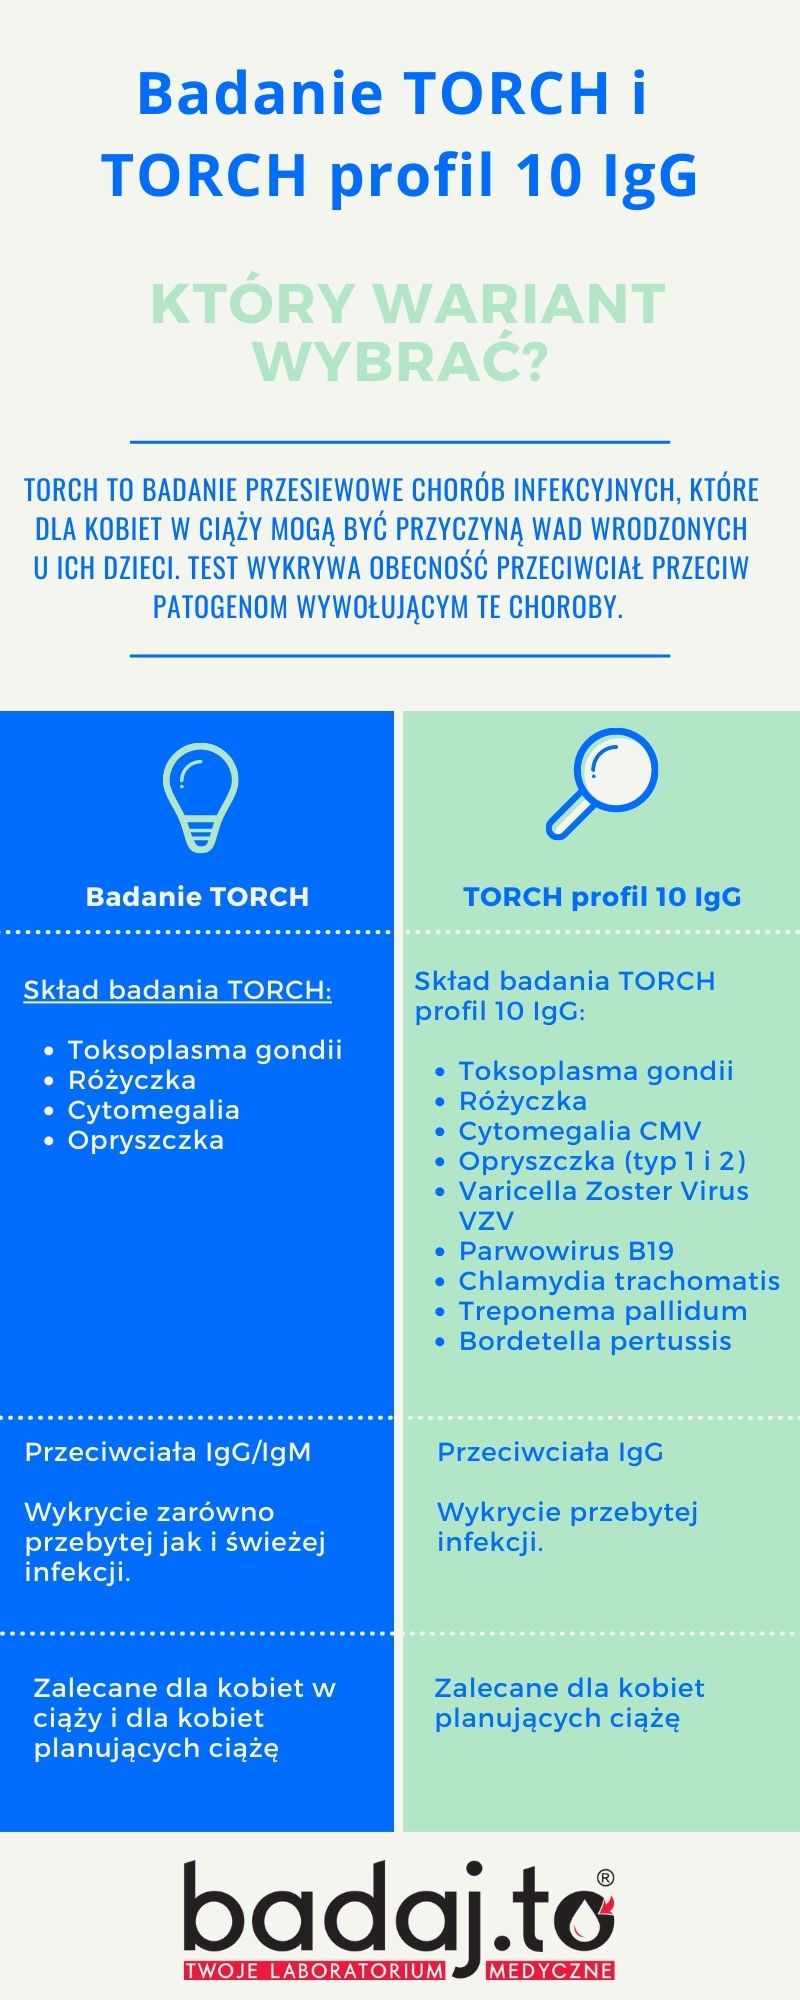 Badanie TORCH i TORCH profil 10 IgG – który wariant wybrać?